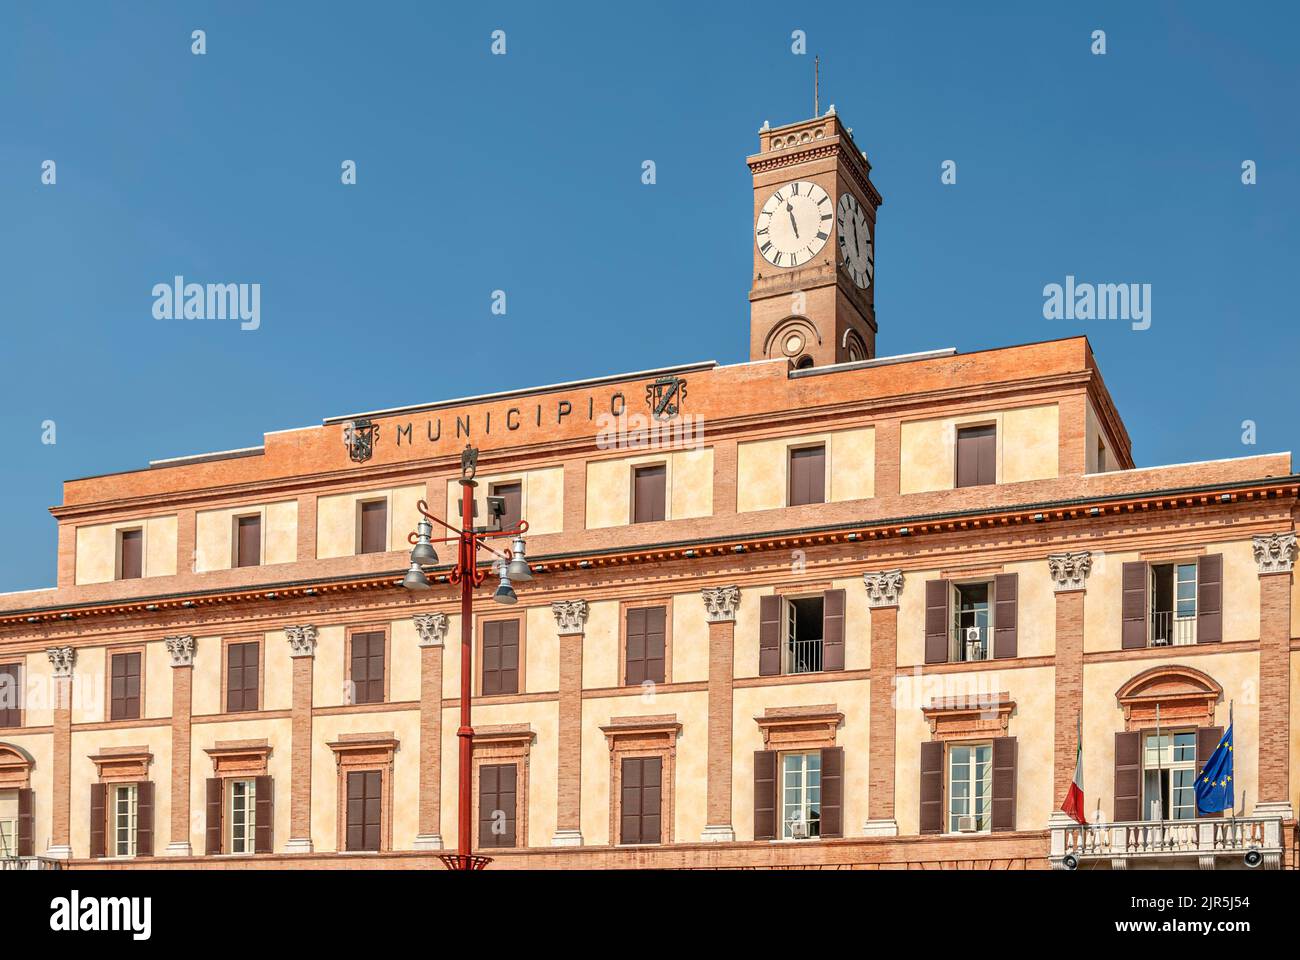 The Municipio of Forli, Emilia-Romagna, Italy Stock Photo